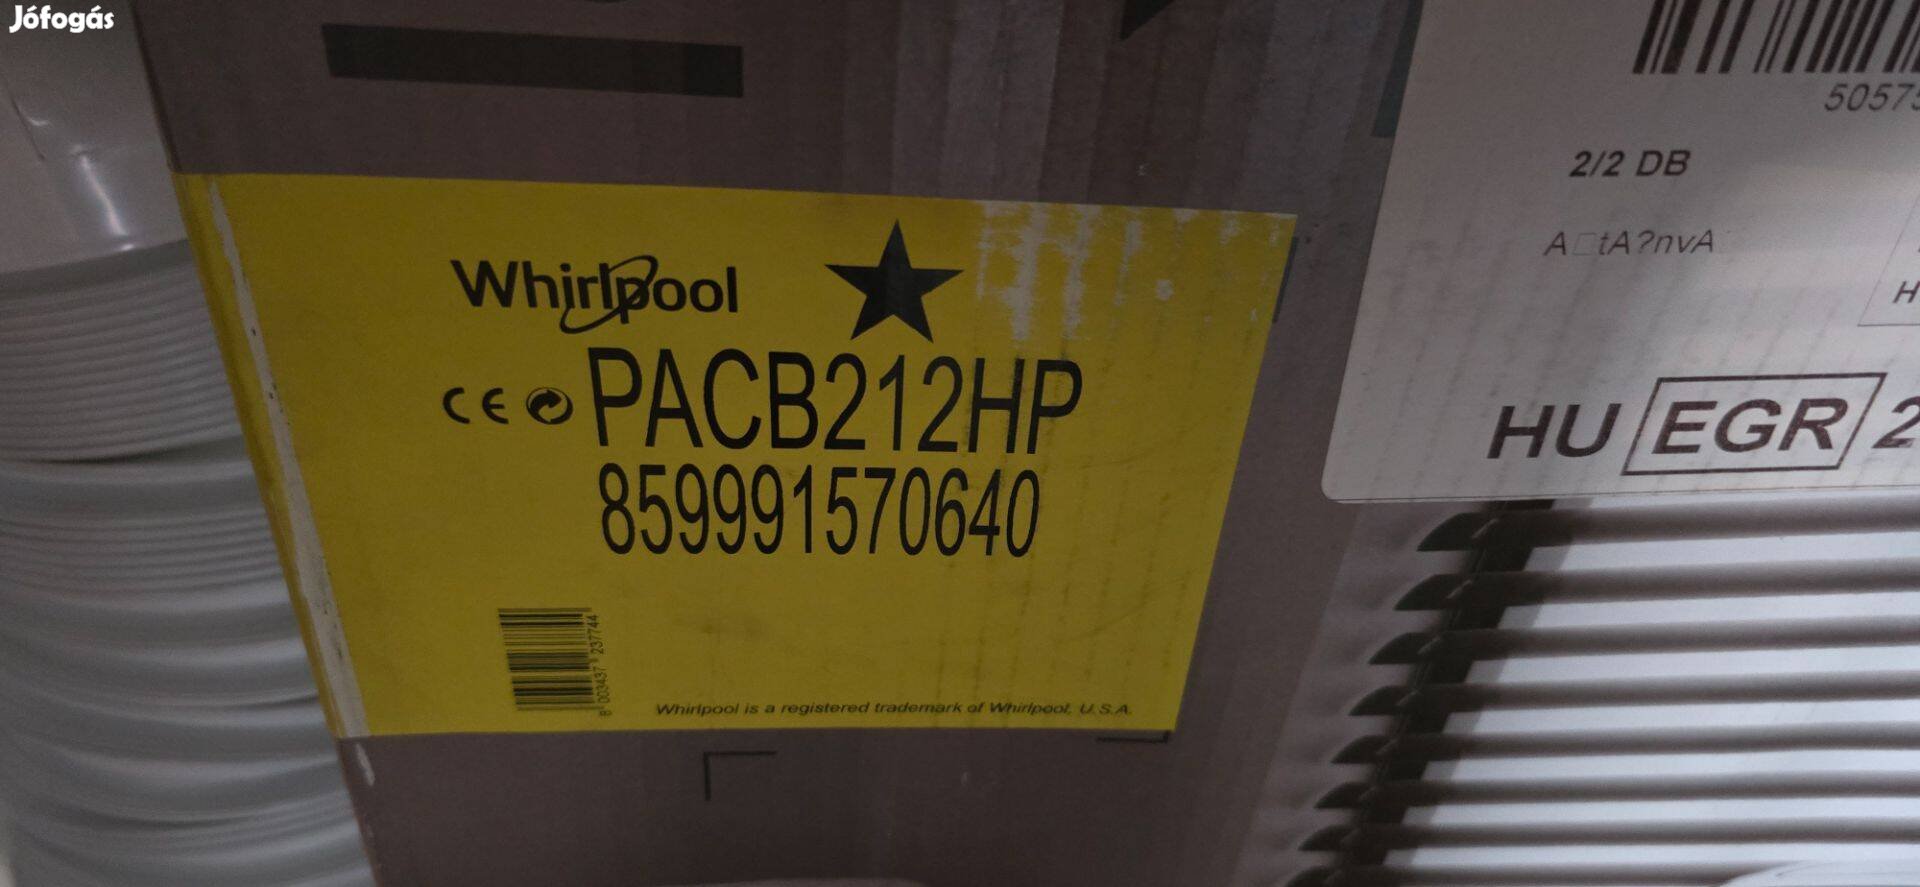 Whirlpool Pacb212HP - Mobil klíma